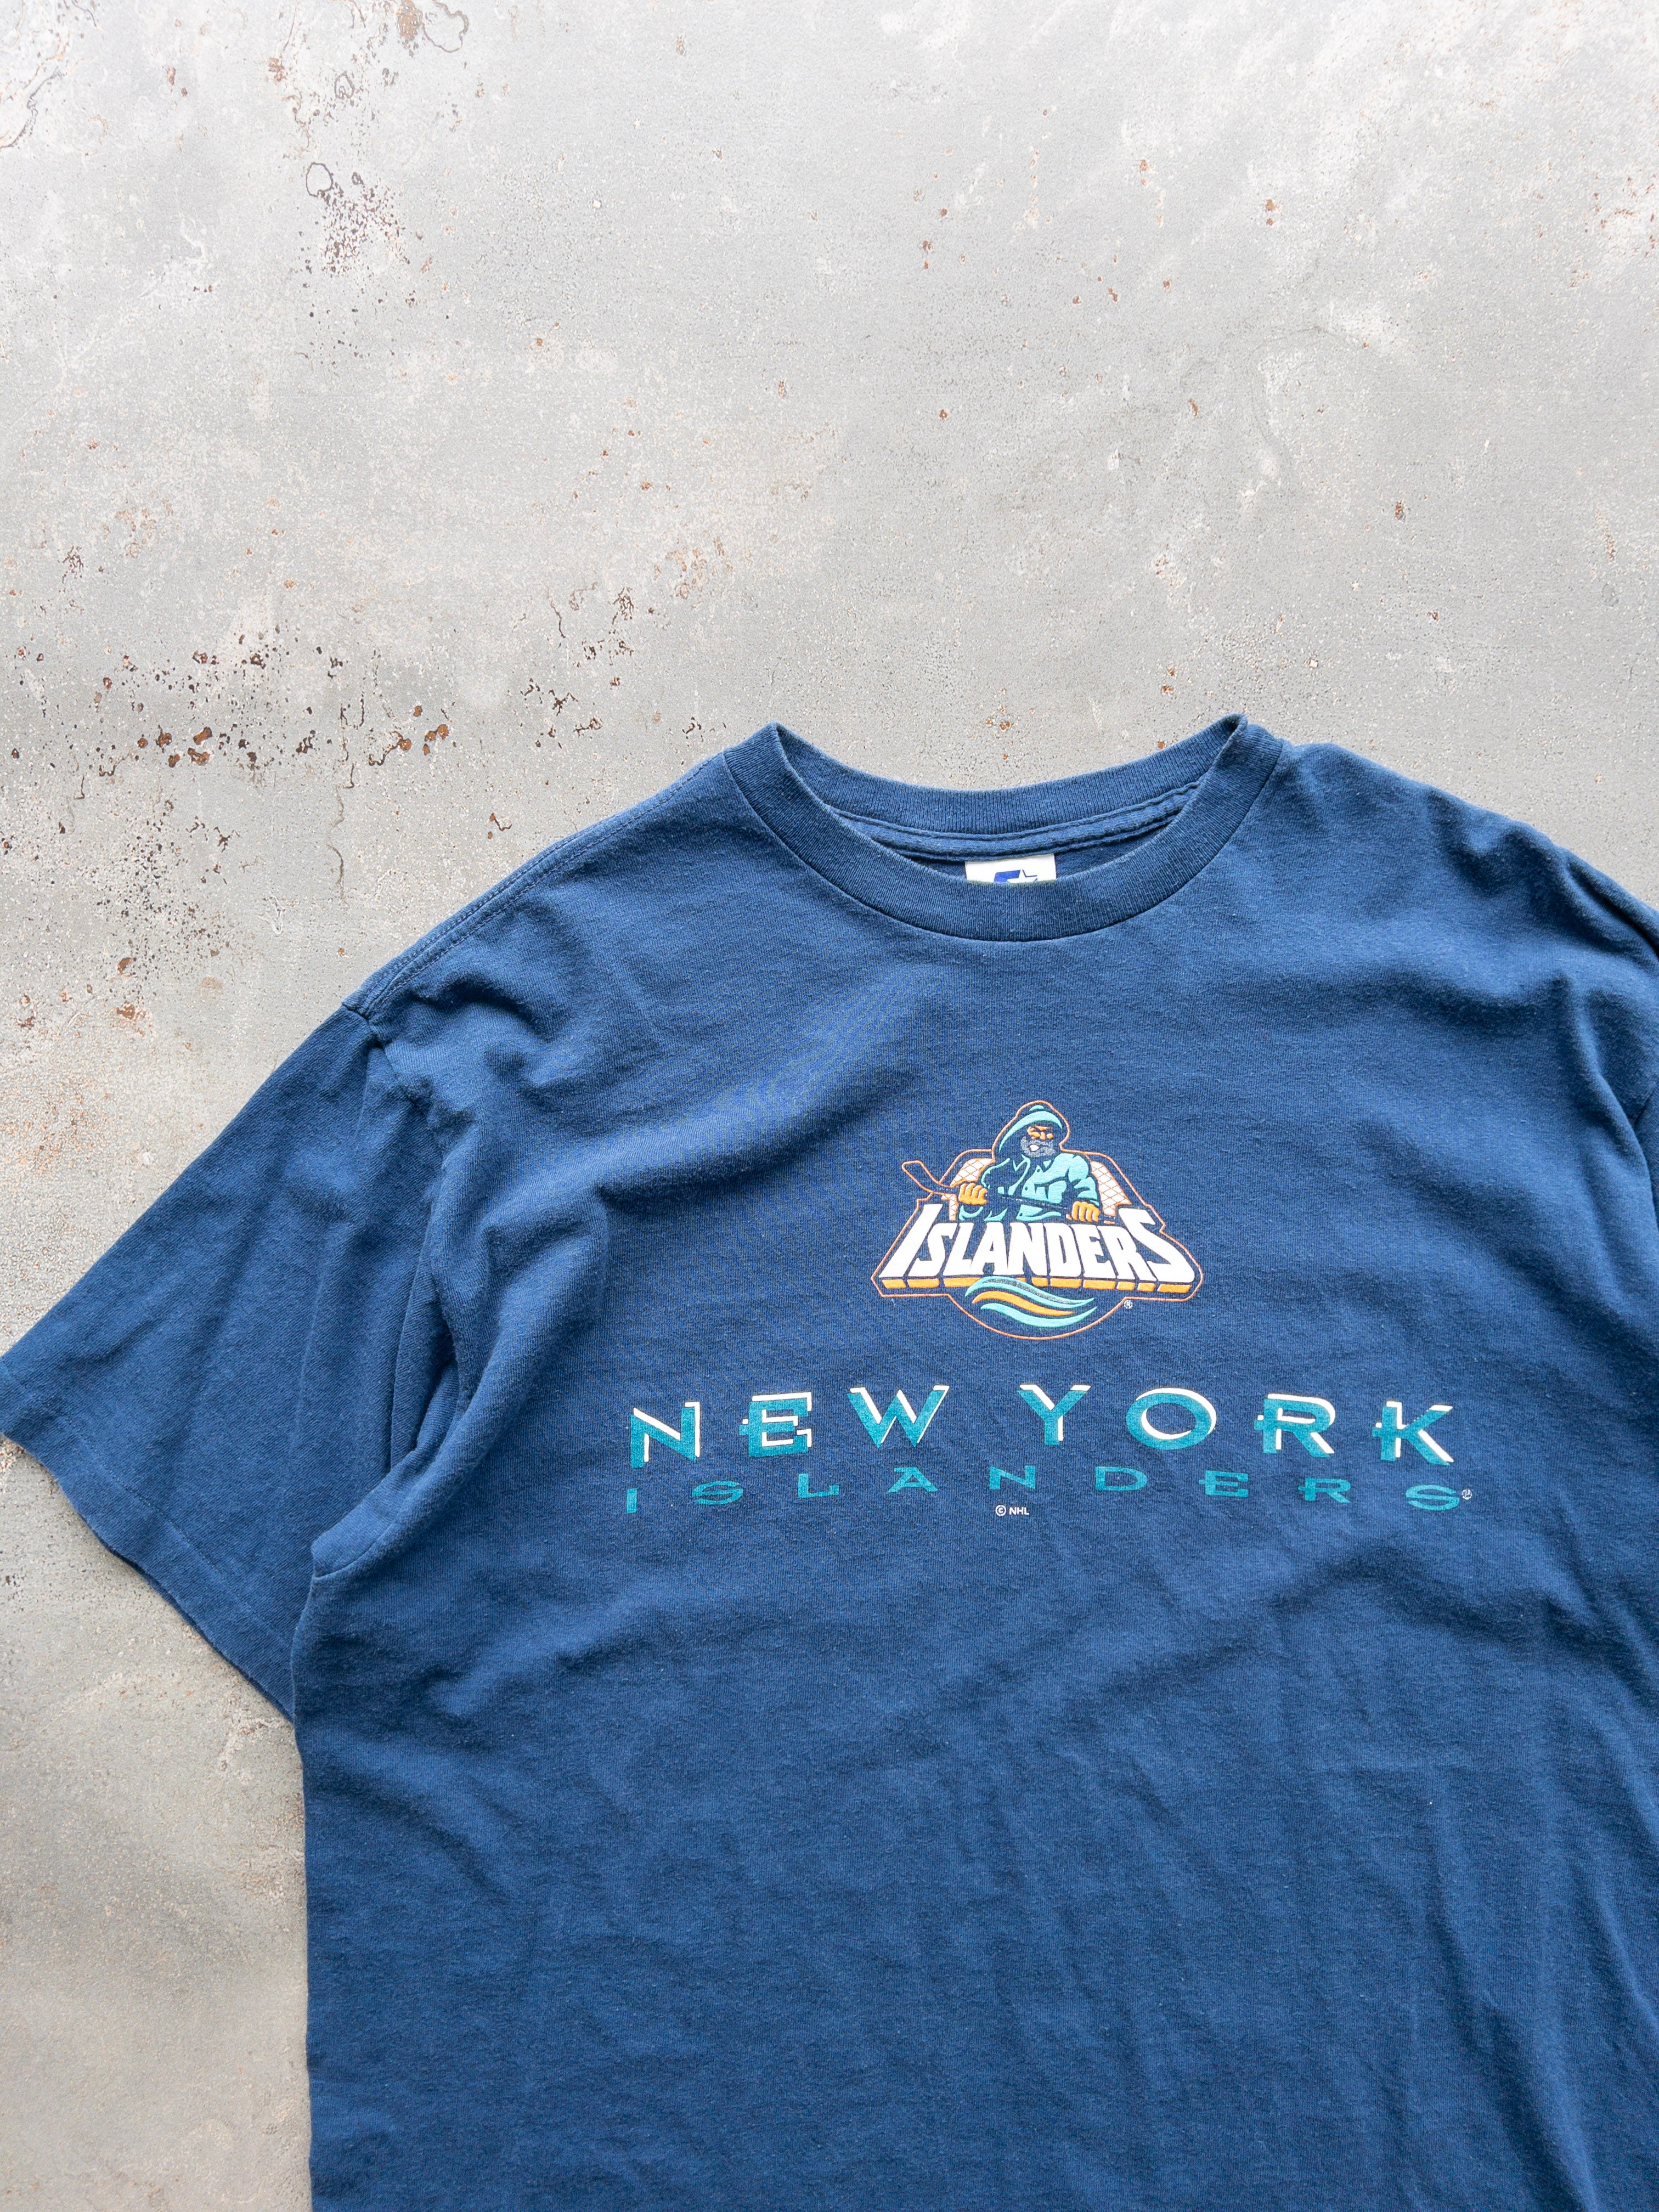 Vintage New York Islanders Tee (XL)